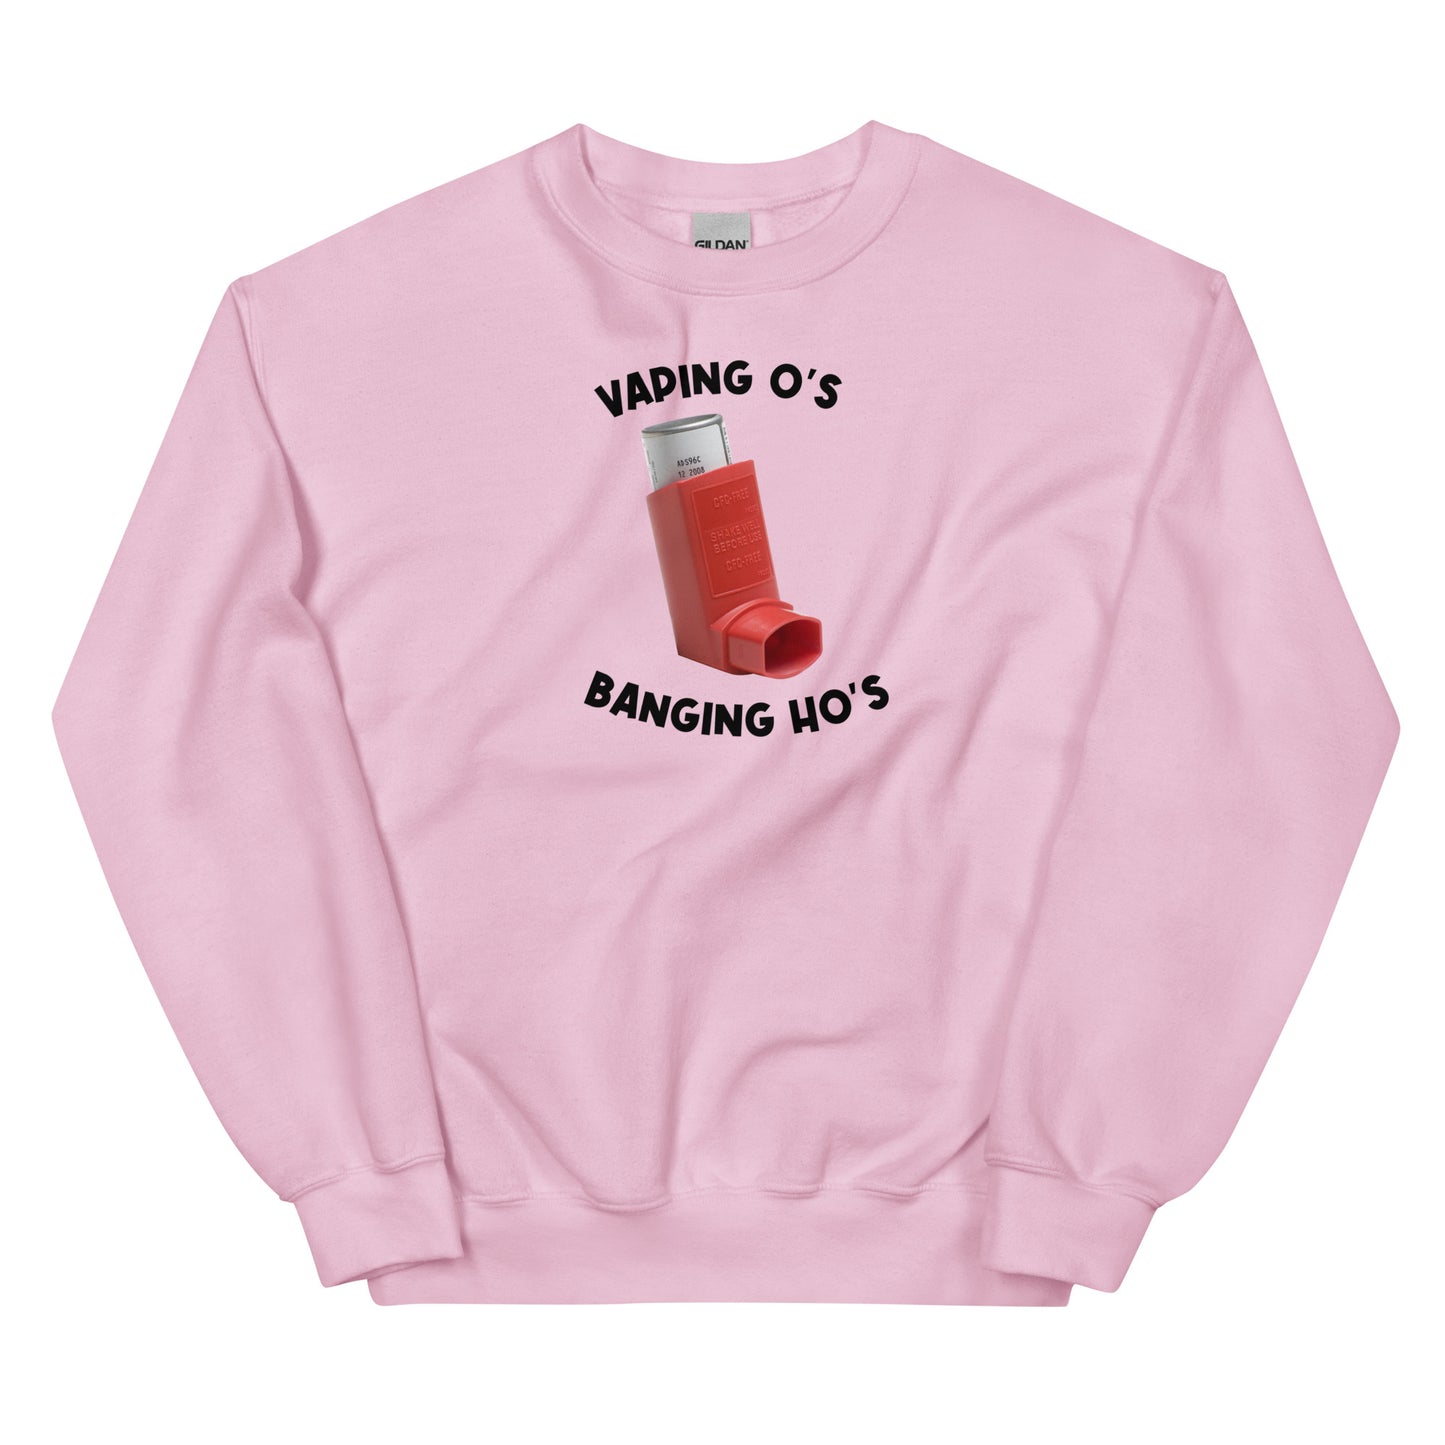 Vaping O's Banging Ho's Unisex Sweatshirt